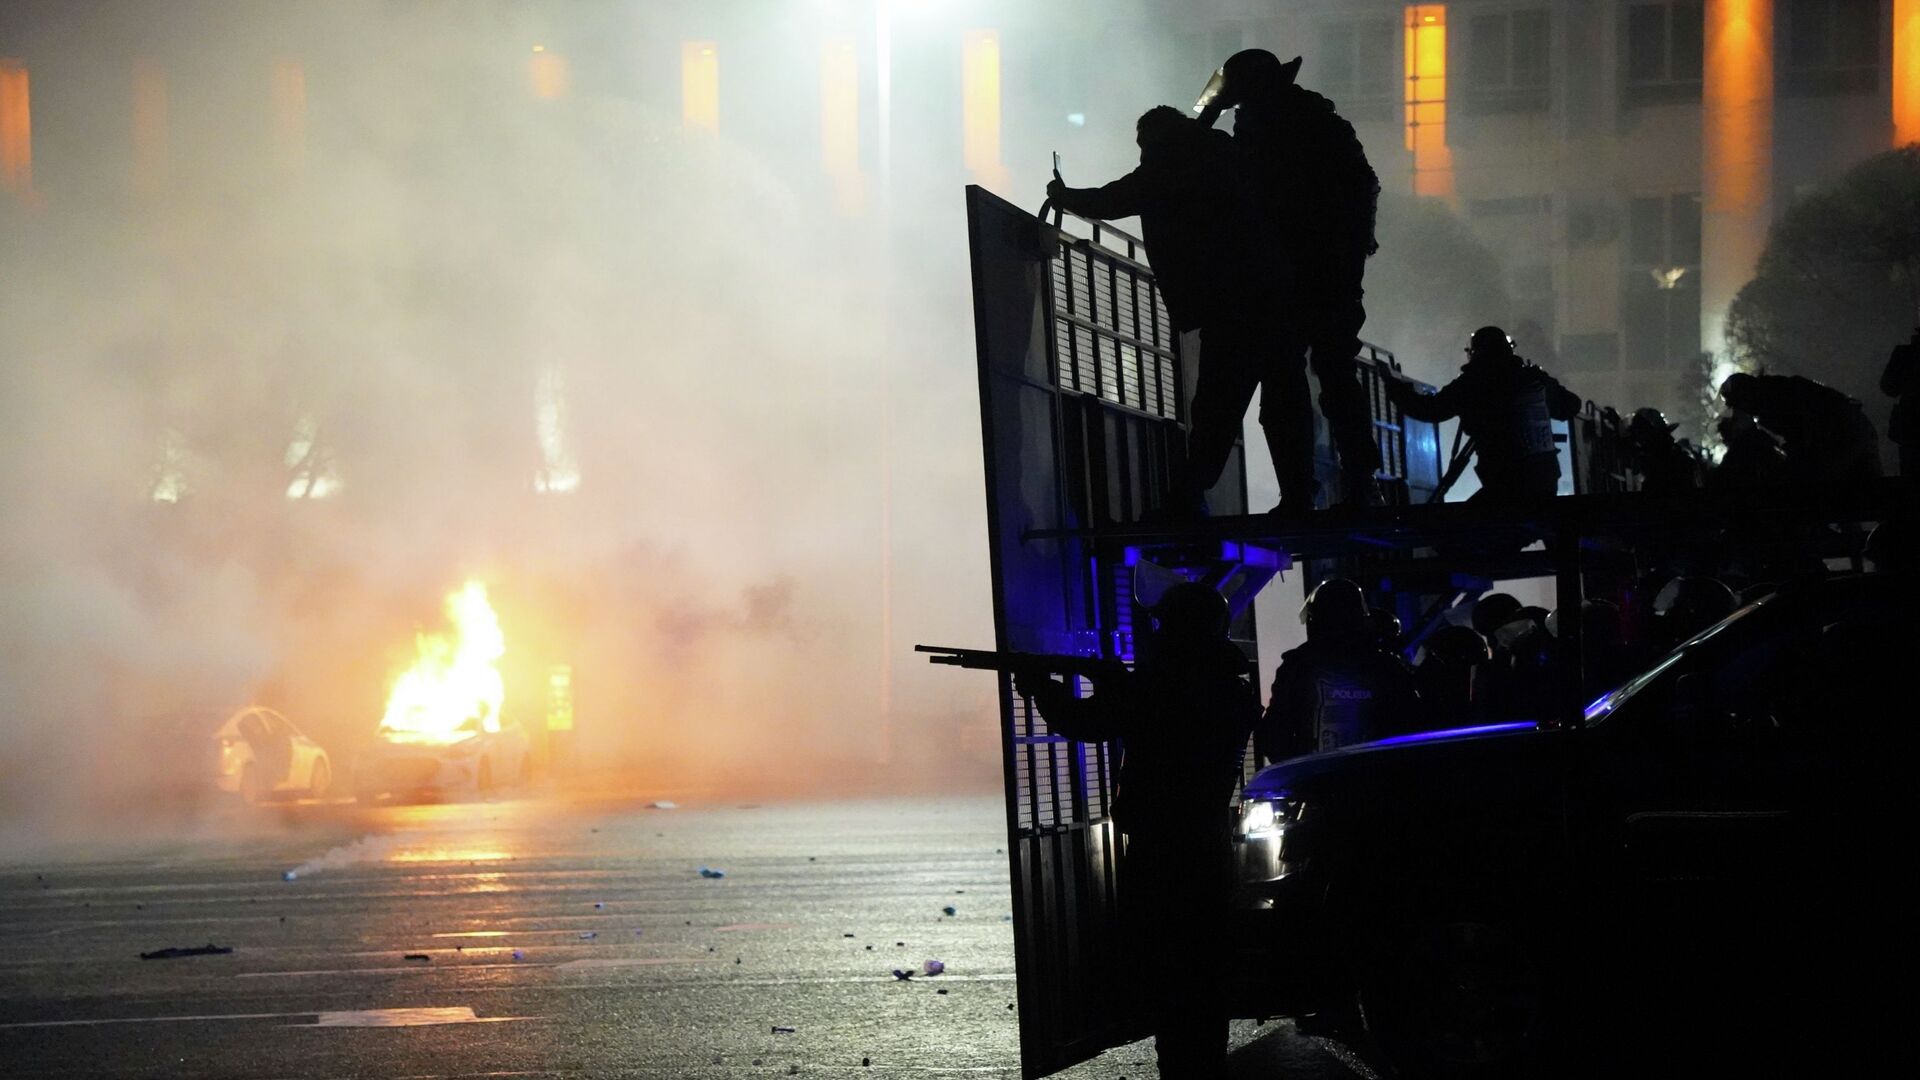 Полицейская машина горит, когда ОМОН готовится остановить демонстрантов в центре Алматы, Казахстан, среда, 5 января 2022 г.  - Sputnik Қазақстан, 1920, 18.01.2022